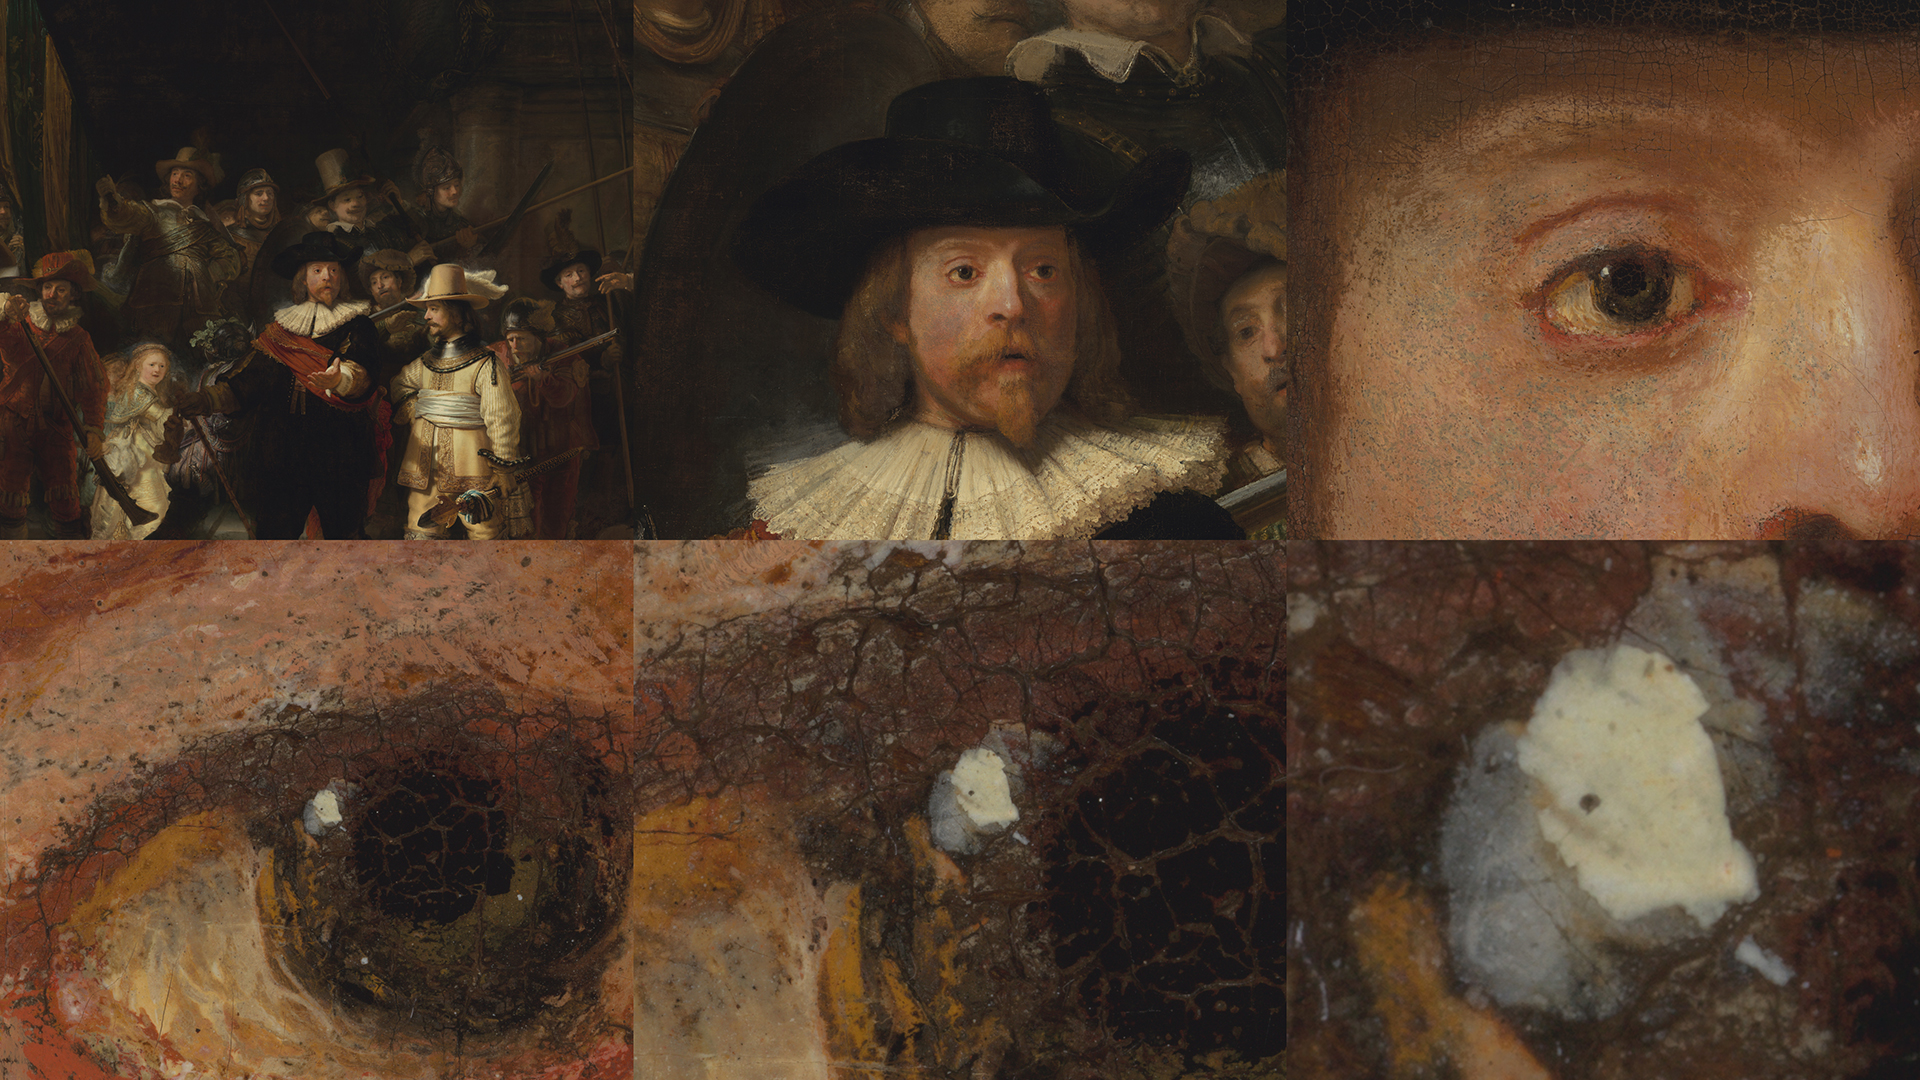 la plus grande photo au monde Rembrandt 717 milliards de pixels